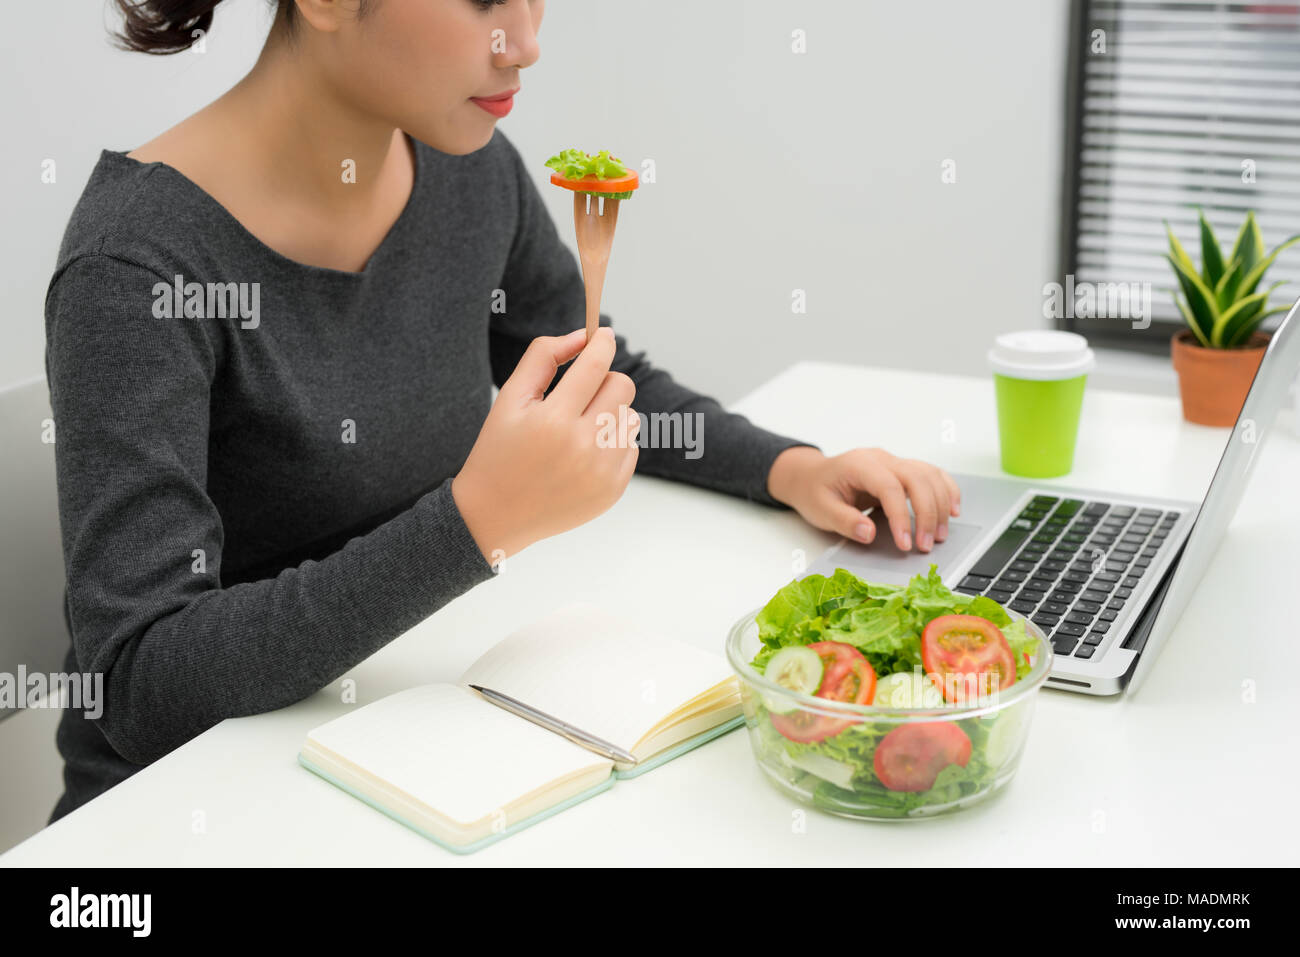 La donna ha un sano pranzo di lavoro in un ufficio moderno interno. Bella giovane imprenditrice al posto di lavoro, mangiare insalata di verdure nella ciotola, dieta e v Foto Stock